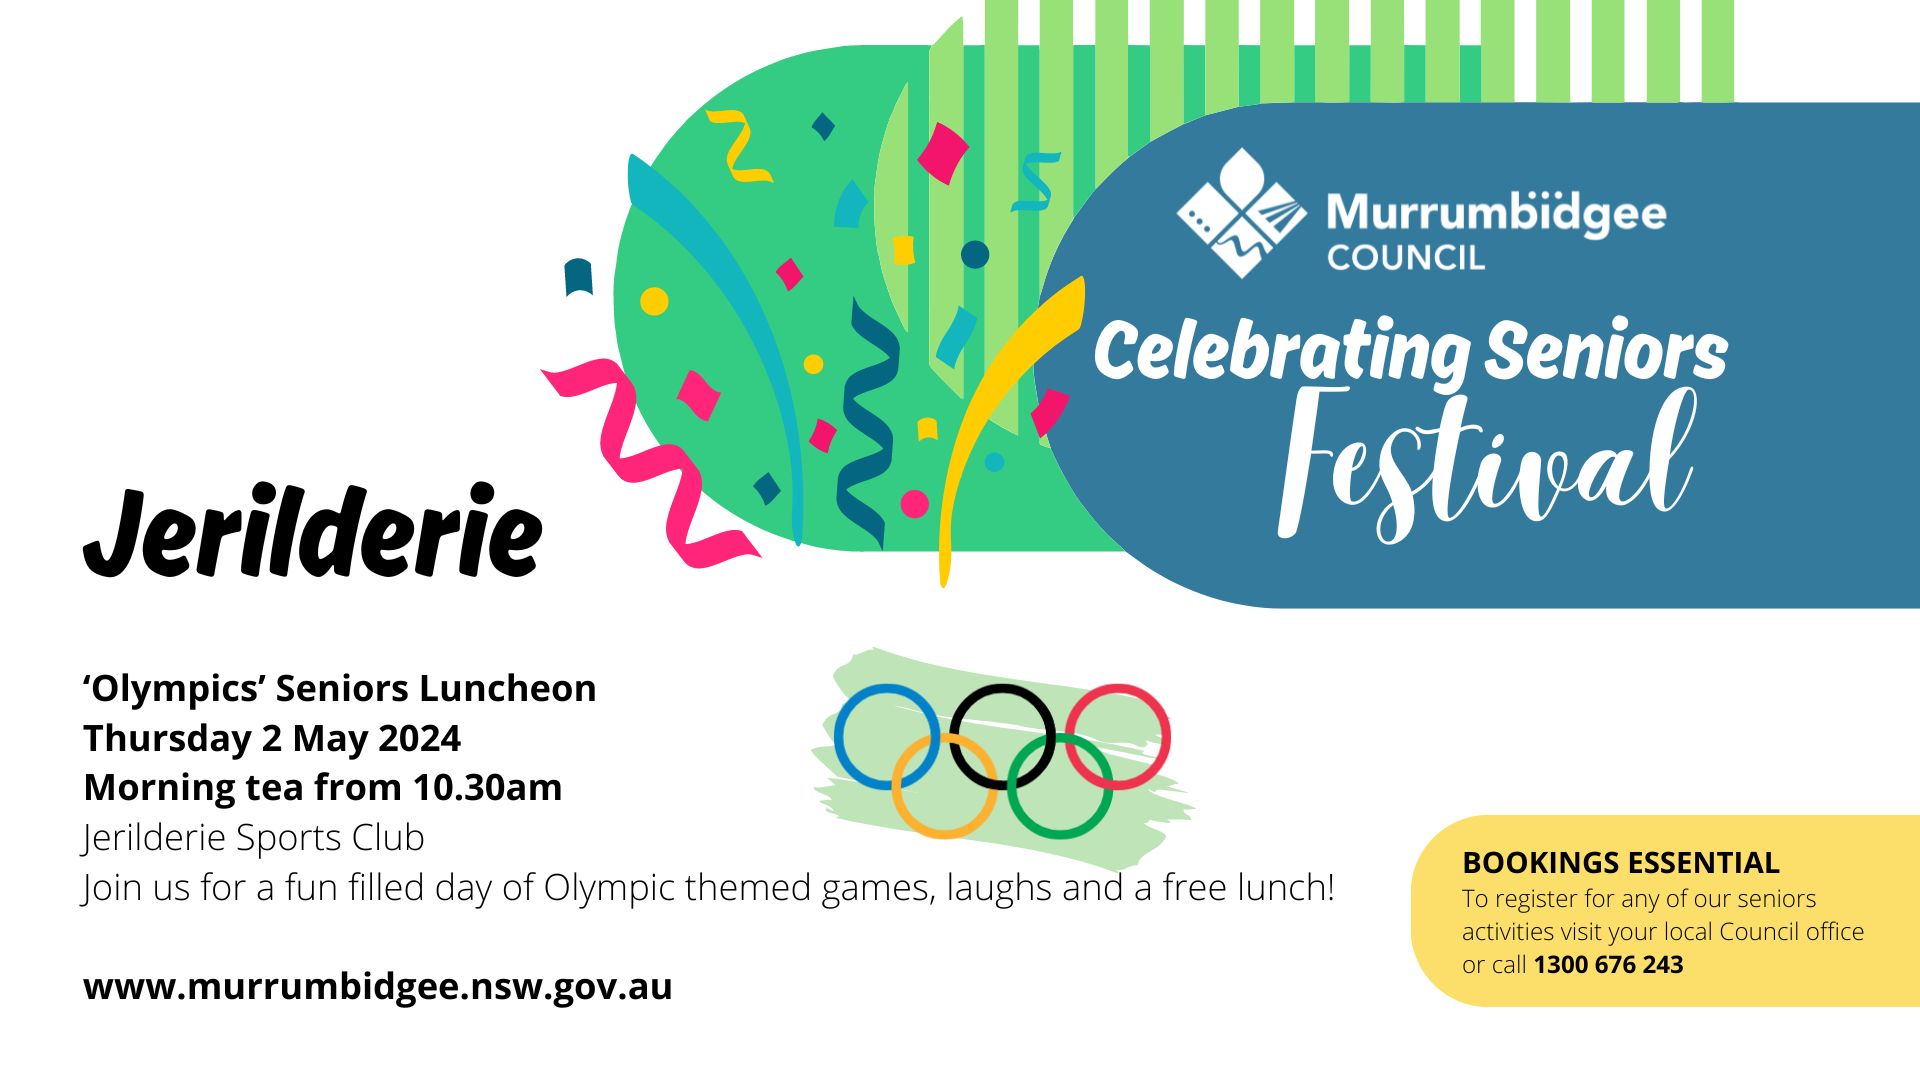 Celebrating Seniors Festival - Jerilderie 'Olympics' Luncheon